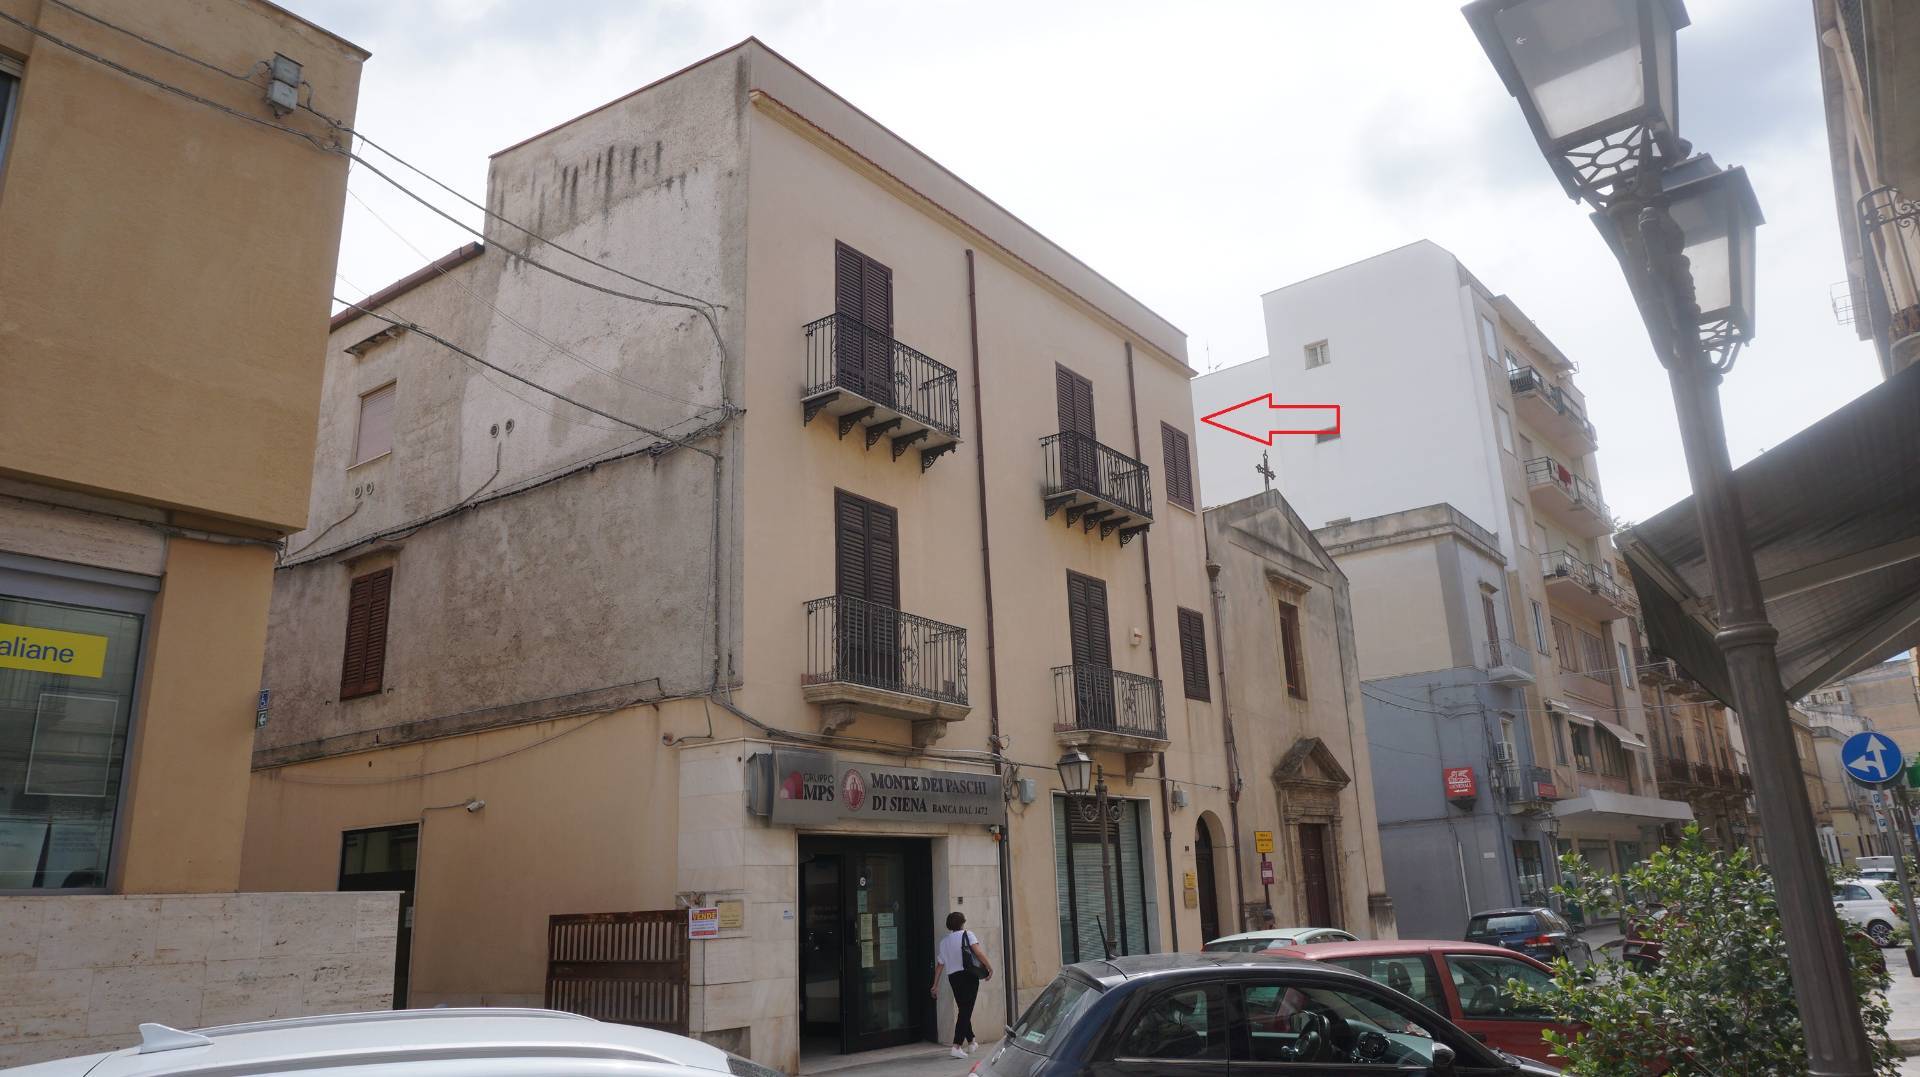 Appartamento in vendita a Castelvetrano, 4 locali, zona Località: CentroStorico, prezzo € 57.000 | PortaleAgenzieImmobiliari.it